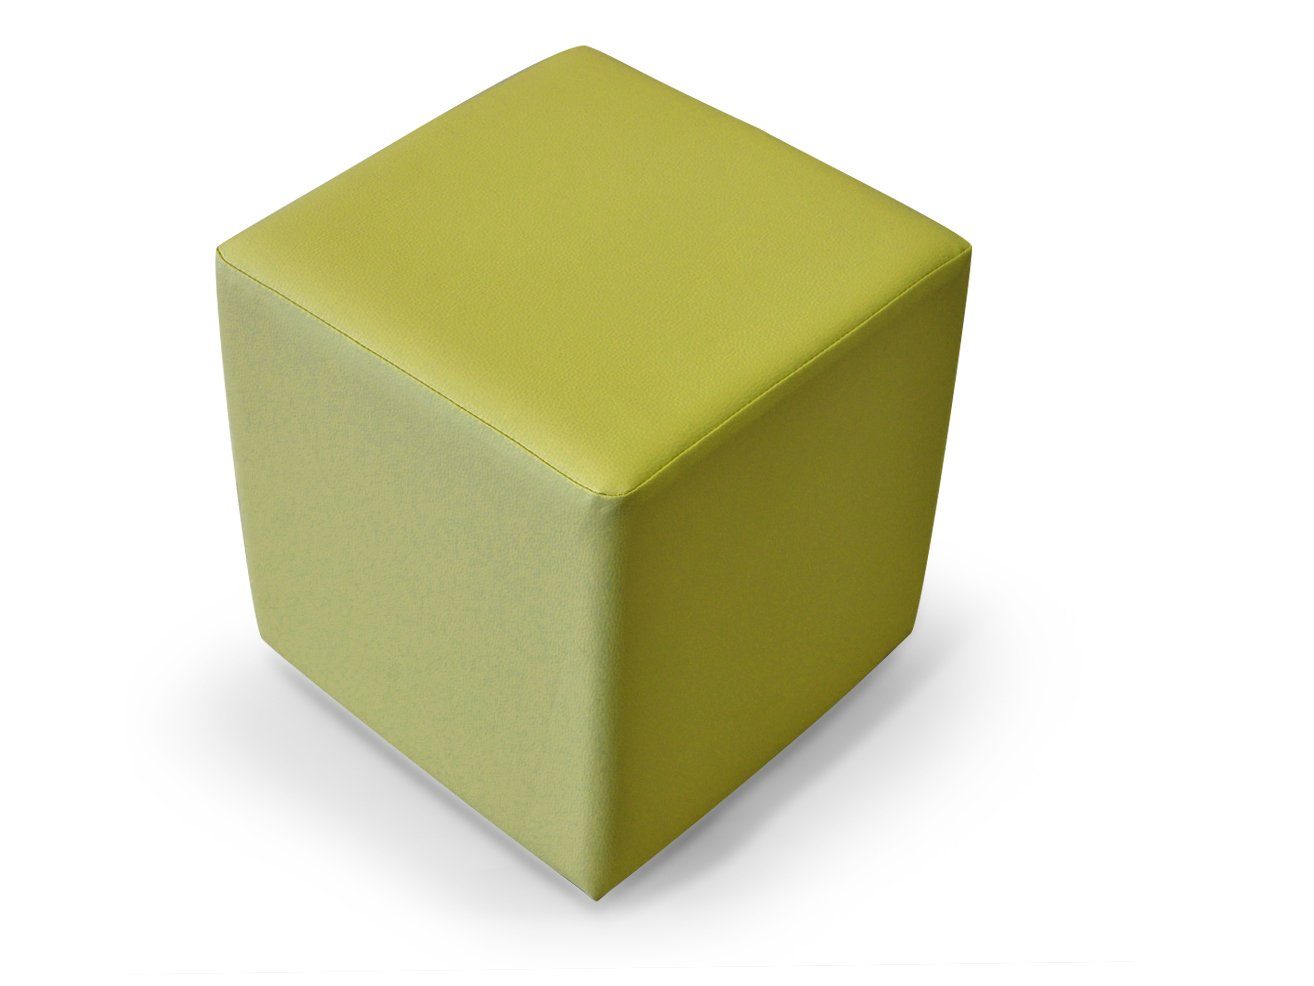 Sitzwürfel 48x43x43 KUBUS cm 48x43x43, Kunstleder, Bequemer Sessel Moebel-Eins KUBUS Bandscheibenwürfel Material grün Sitzwürfel,